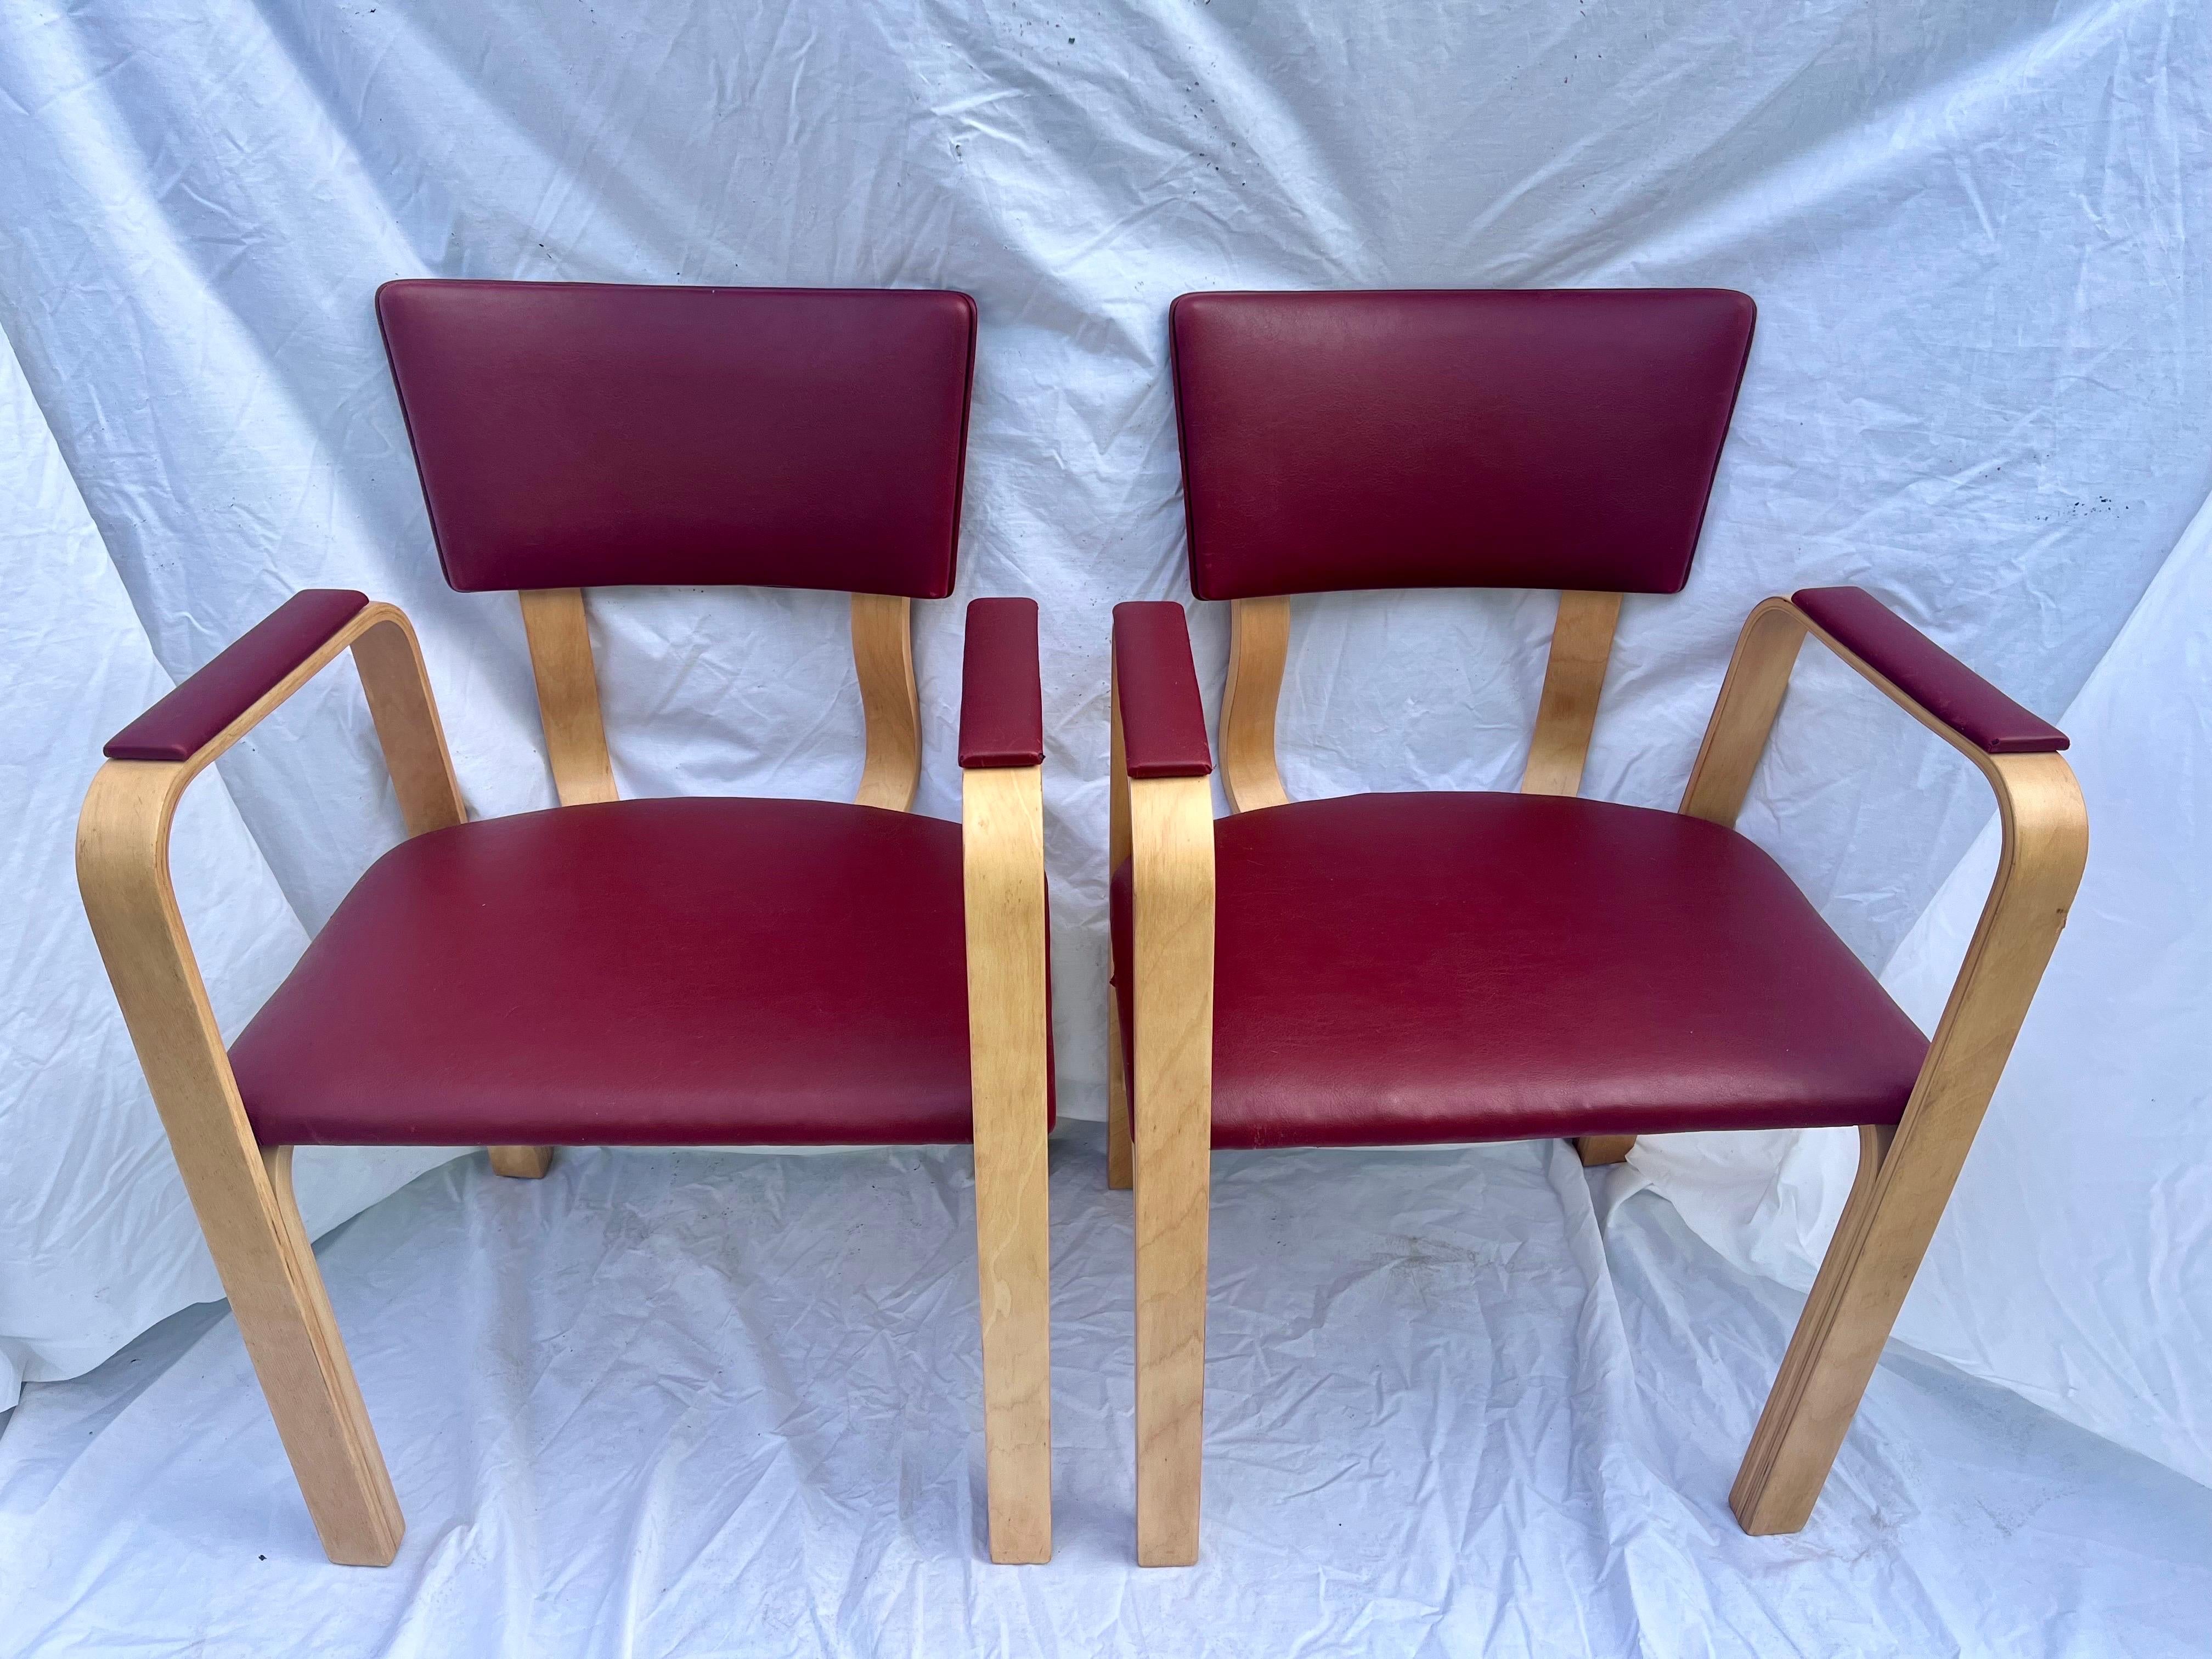 Un ensemble intemporel de quatre chaises à accoudoir ou à manger de Thonet Park Avenue à New York. Le lot de quatre chaises est étiqueté sous les sièges. La tapisserie vintage est de couleur rouge et en feutre de coton. Je fais des recherches sur